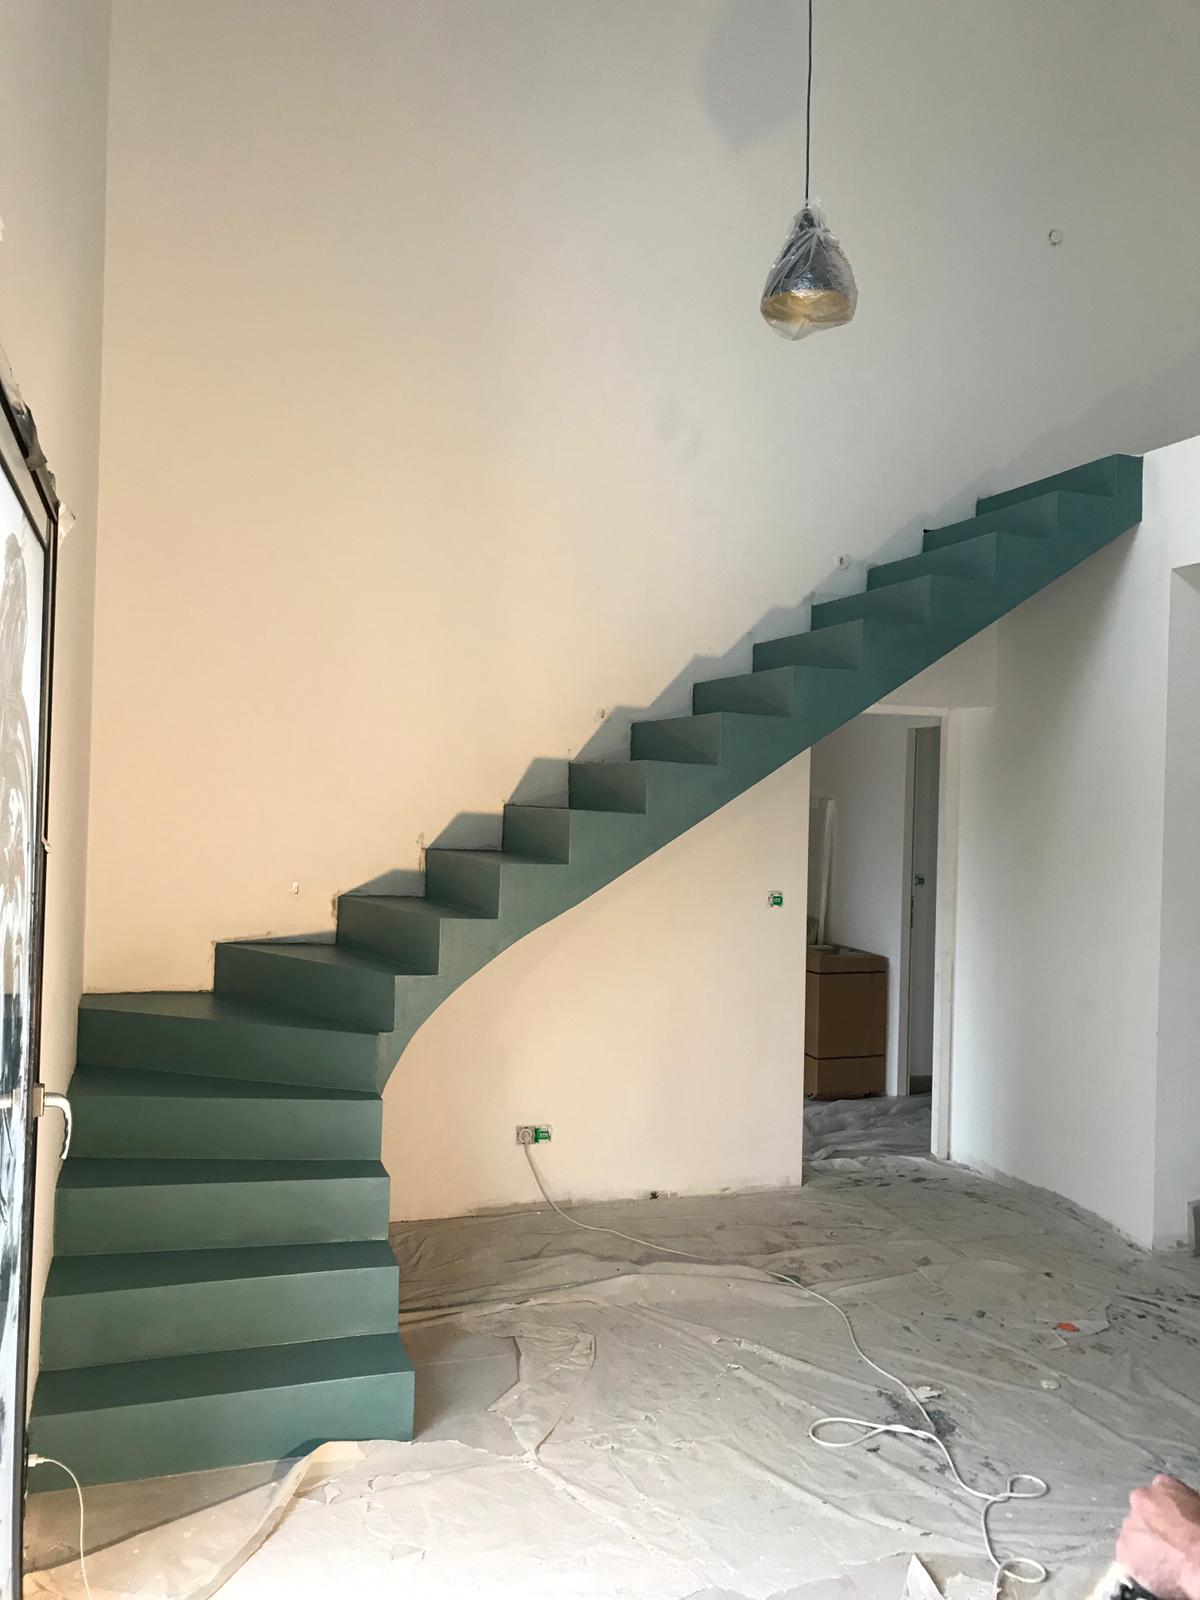 audacieux escalier crémaillère dans une pièce à vivre en béton ciré vernis mat couleur malachite pour un particulier